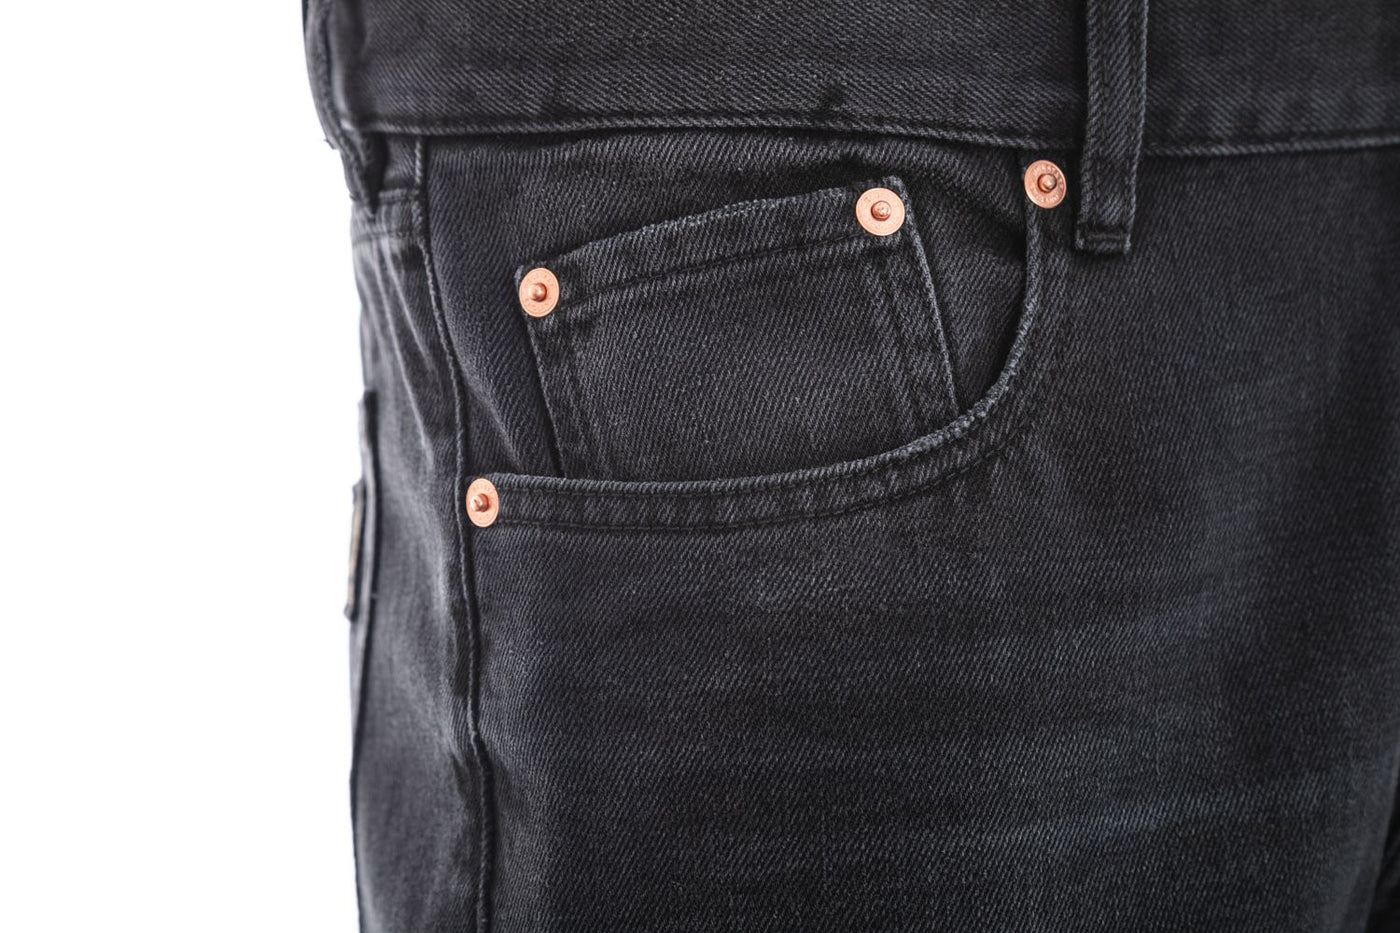 Belstaff Longton Slim Jean in Washed Black Pocket